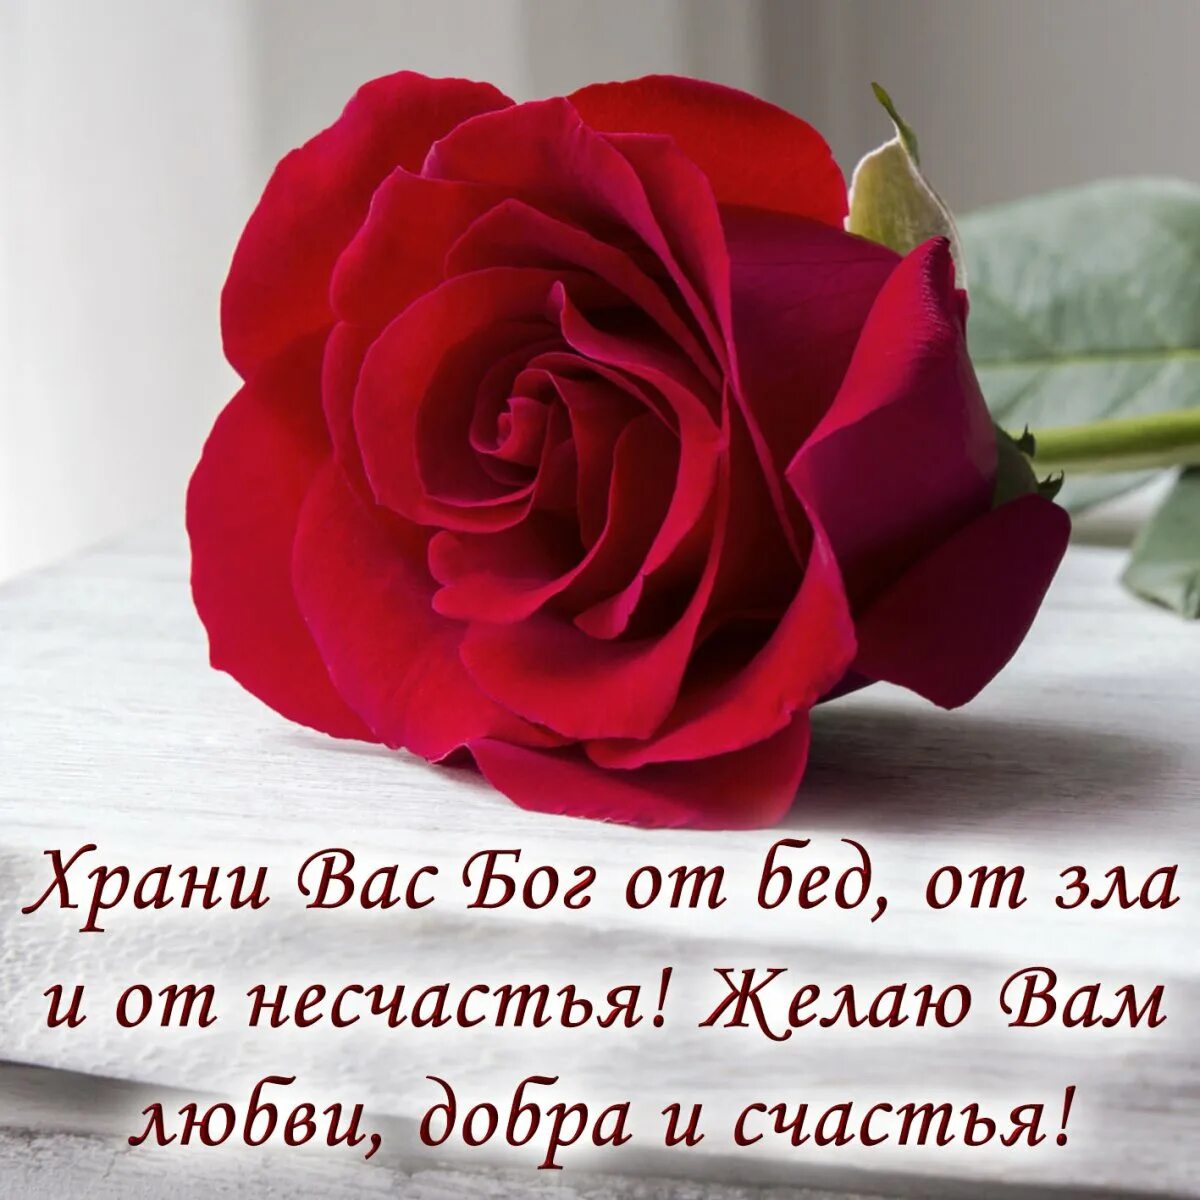 Красивые цветы с пожеланиями. Храни вас Бог. Розы с пожеланиями счастья и здоровья. Цветы для дорогого человека.